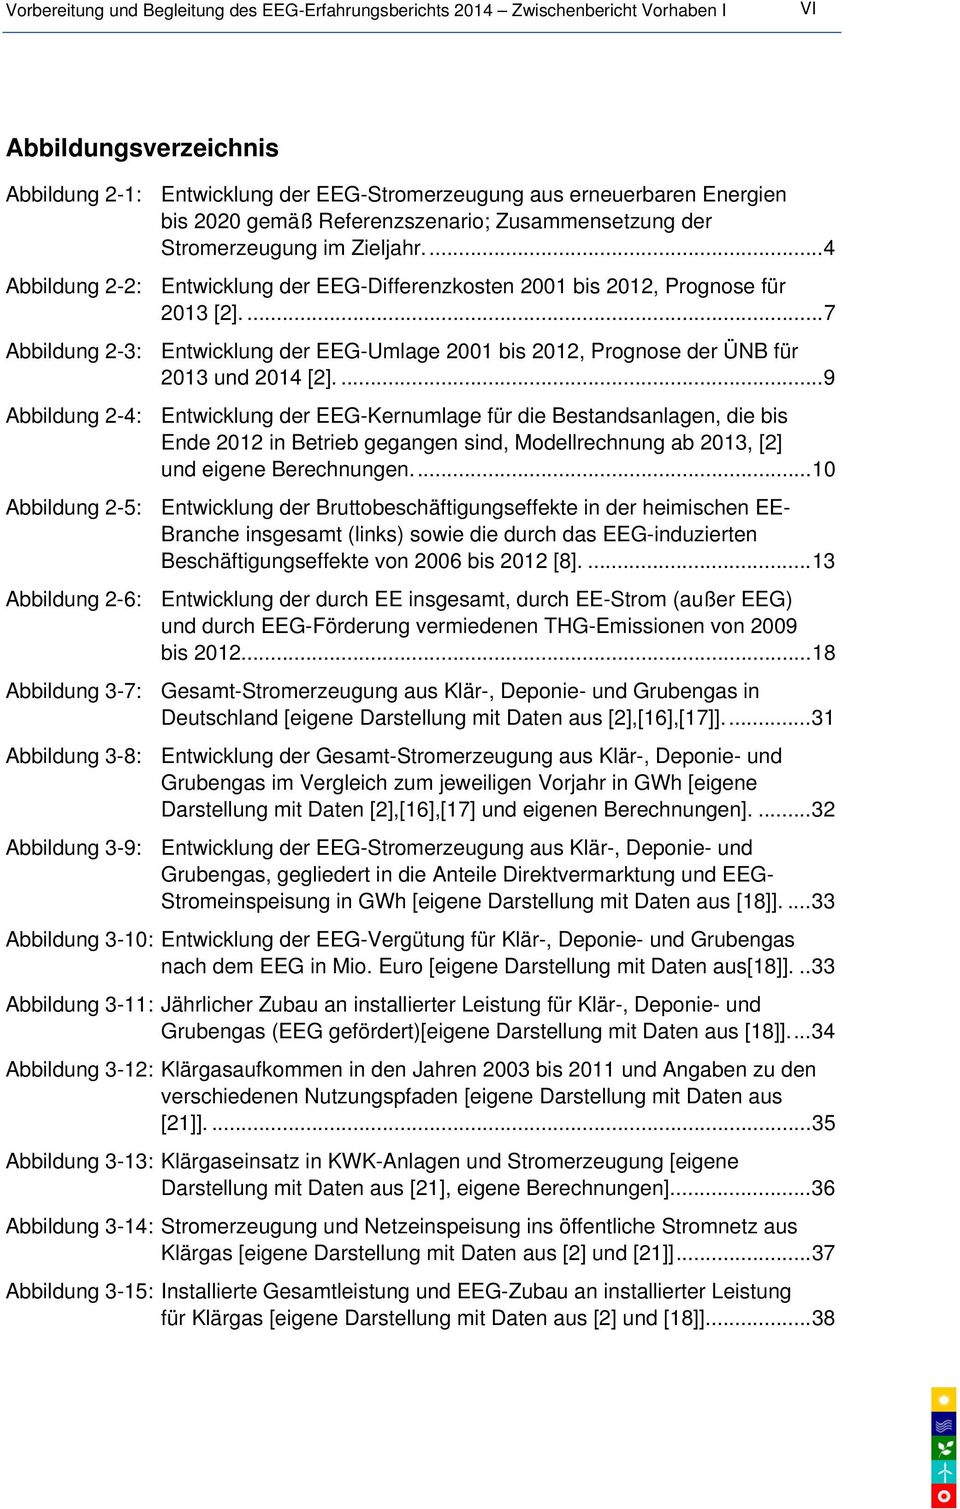 ...7 Abbildung 2-3: Entwicklung der EEG-Umlage 2001 bis 2012, Prognose der ÜNB für 2013 und 2014 [2].